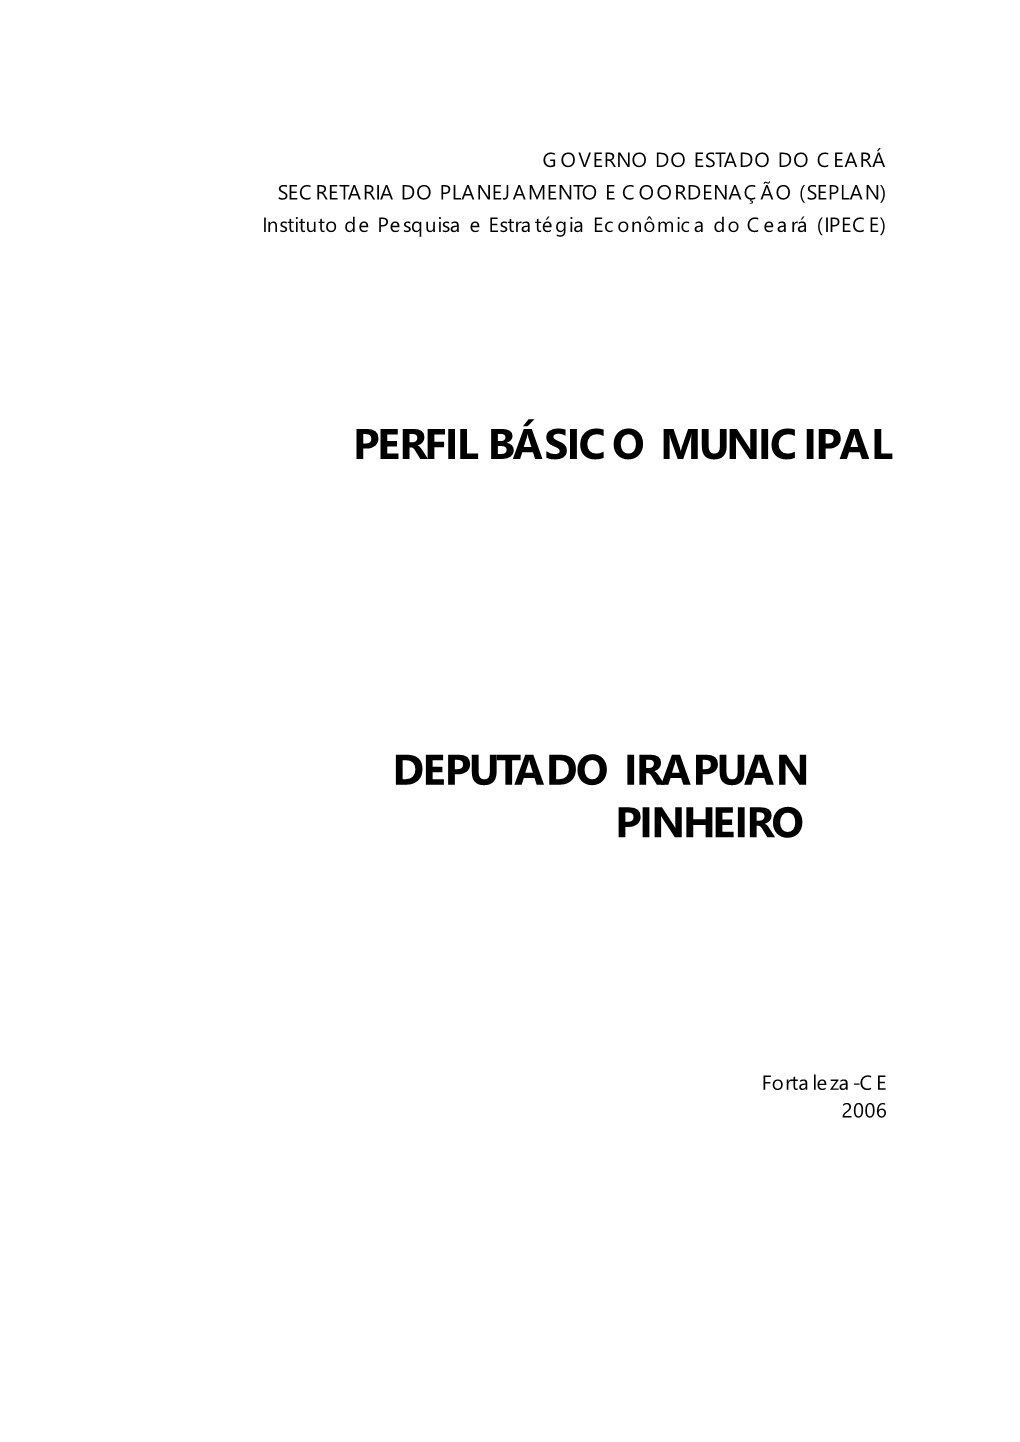 Perfil Básico Municipal DEPUTADO IRAPUAN PINHEIRO 5